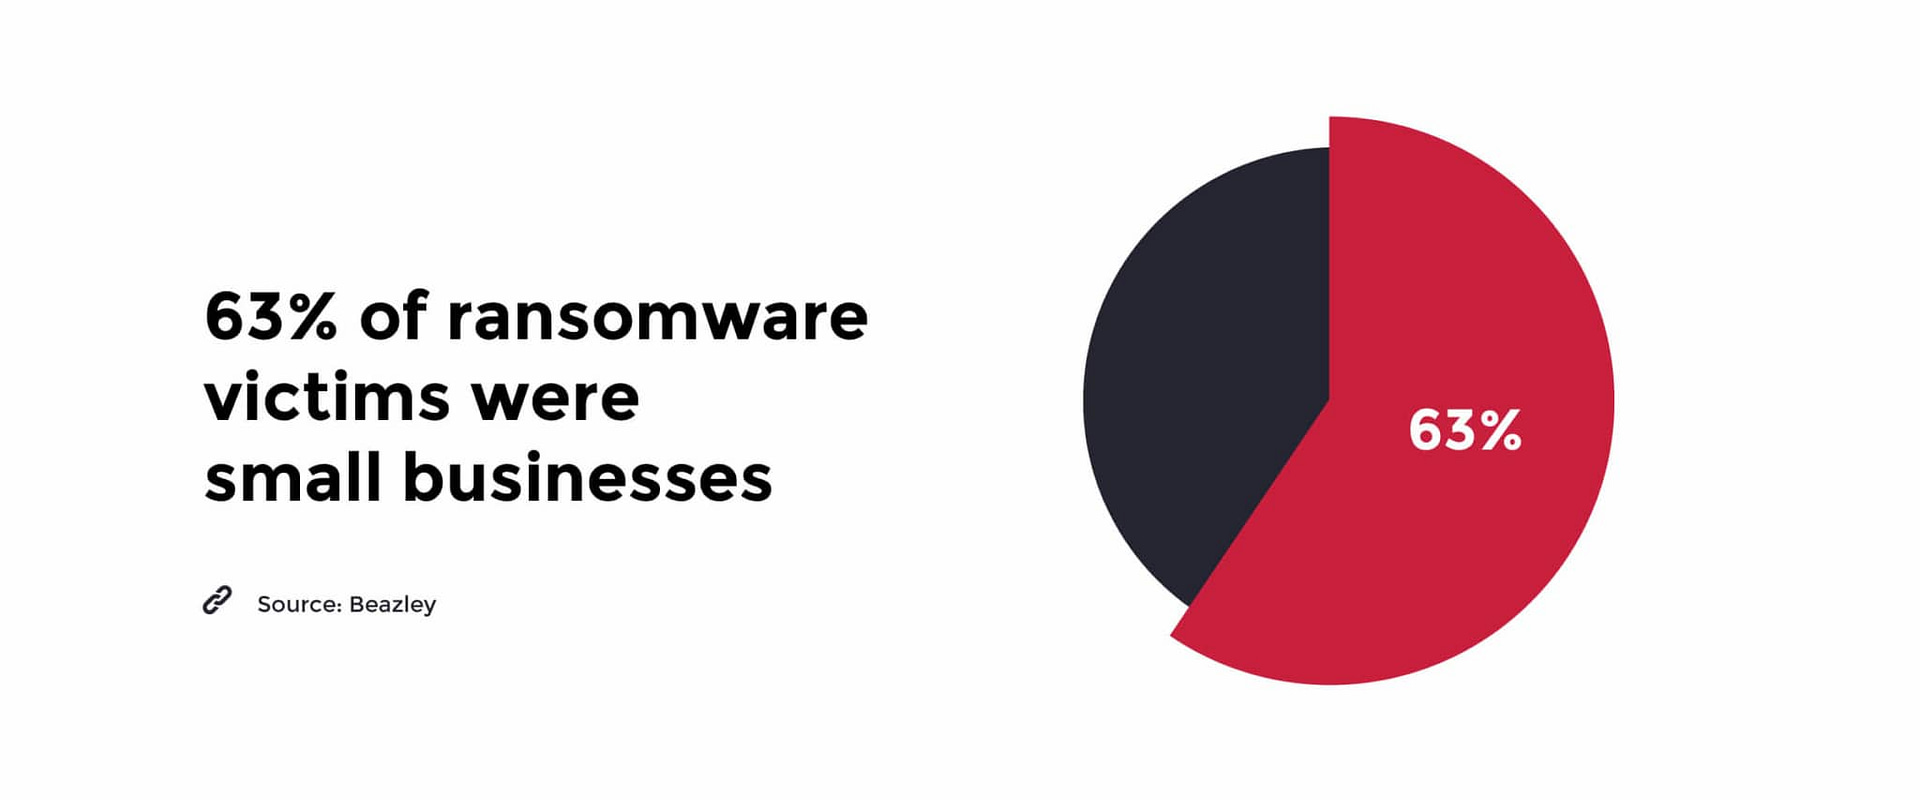 statistiche sui ransomware per le piccole imprese 2019